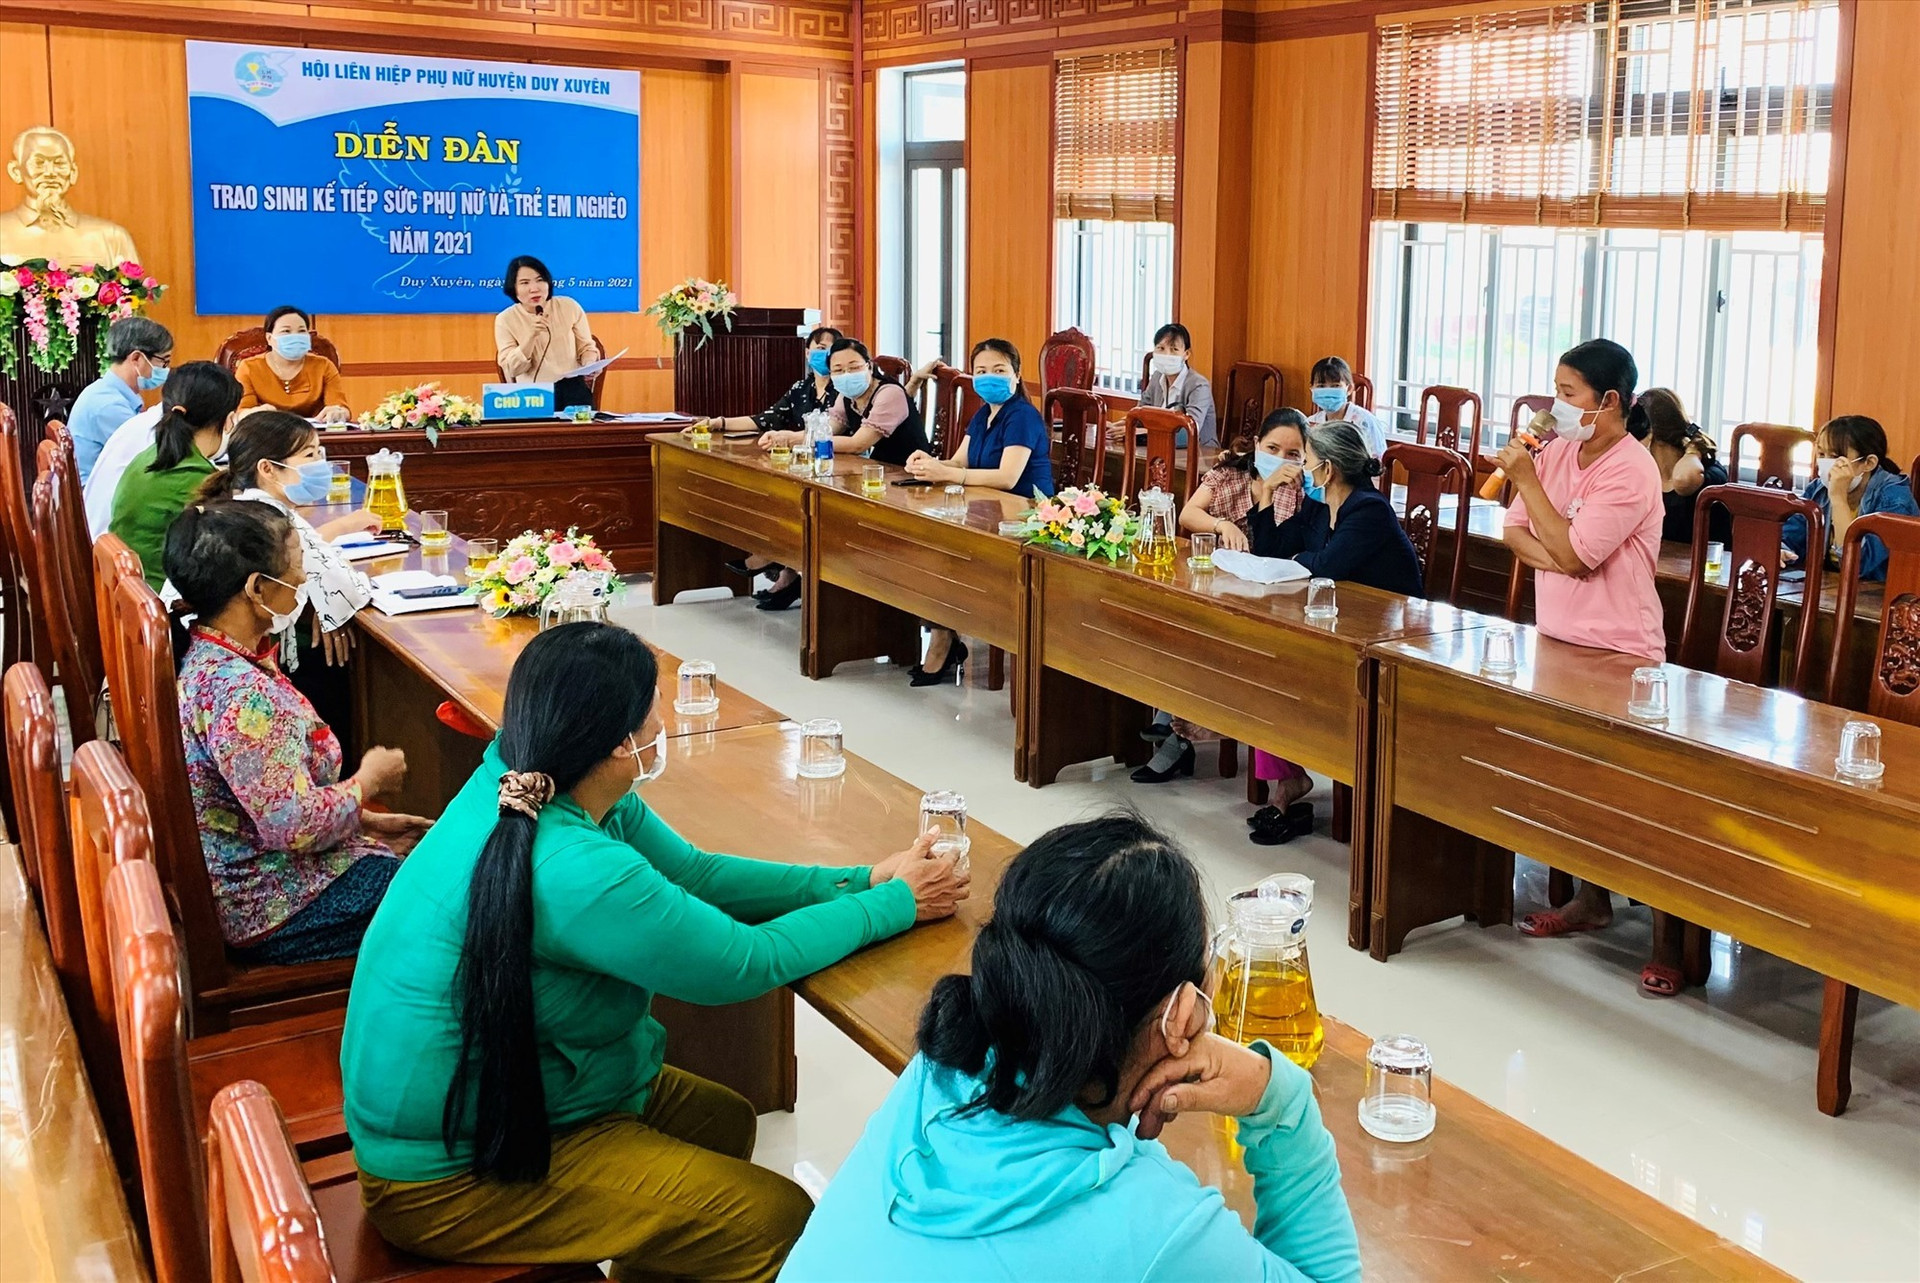 Lãnh đạo Hội LHPN huyện Duy Xuyên trao đổi với hội viên phụ nữ nghèo tại diễn đàn. Ảnh: T.L